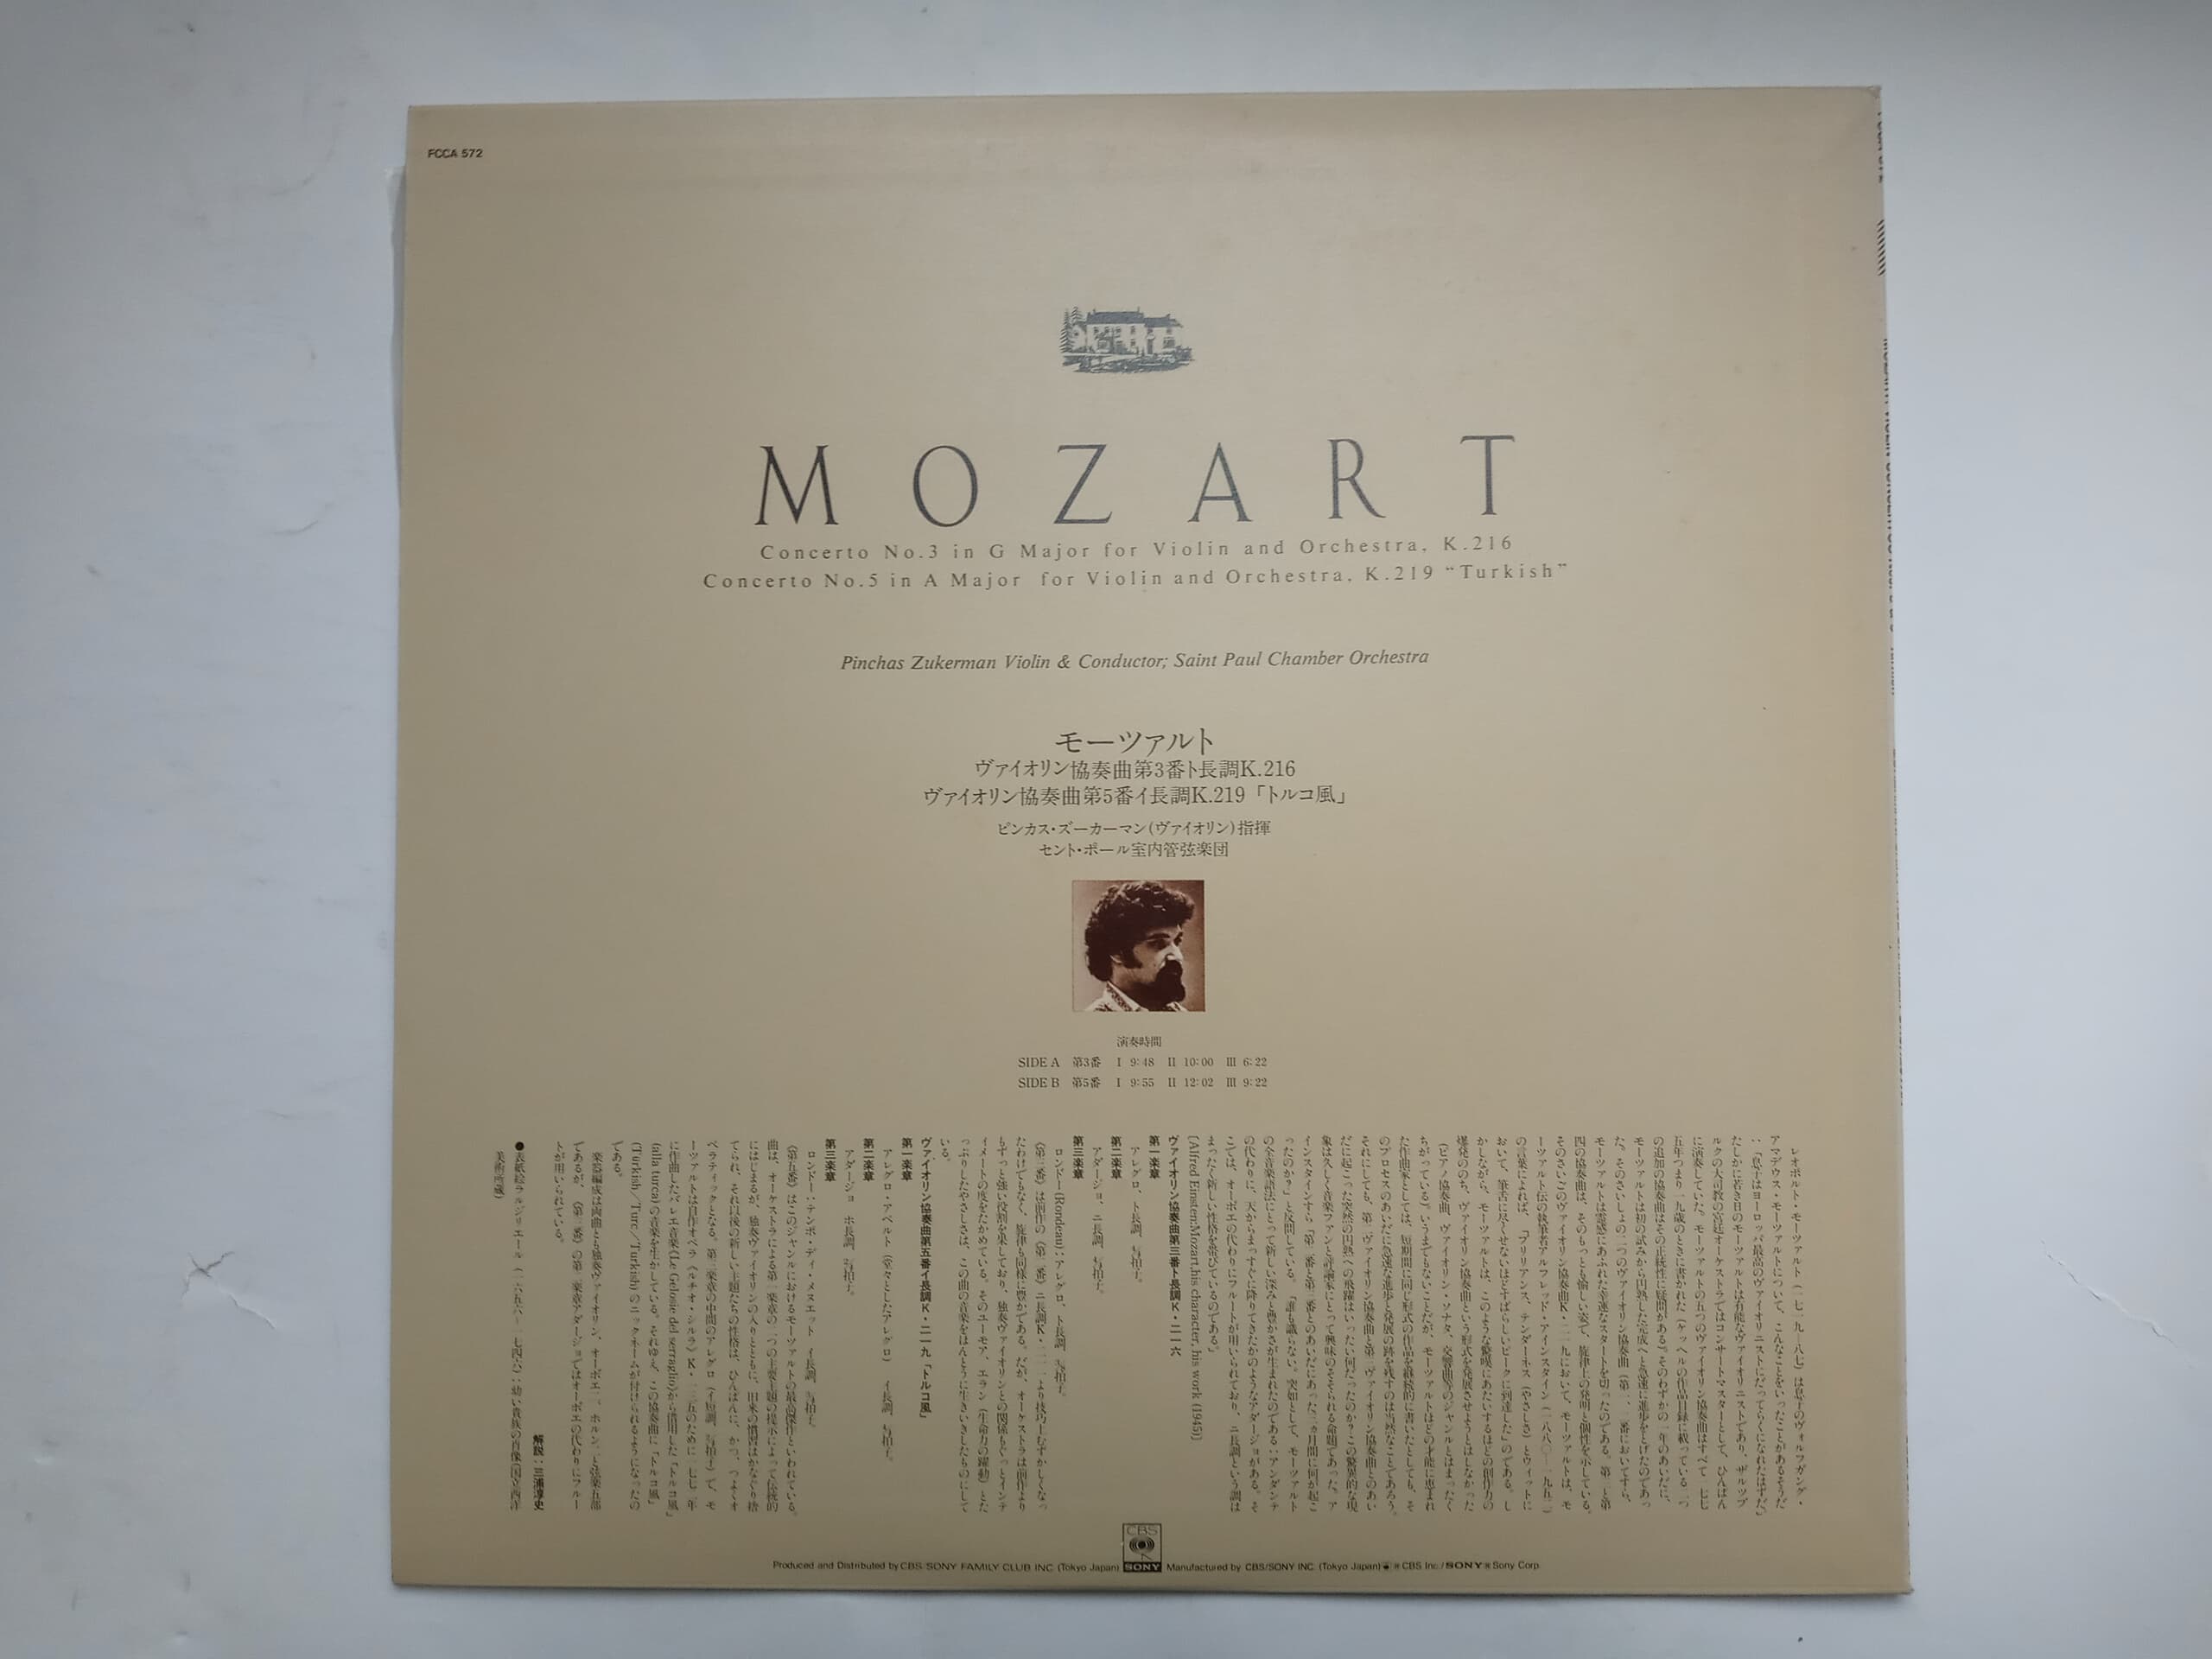 LP(수입) 모차르트: 바이올린 협주곡 3, 5번 - 핀커스 주커만 / 세인트 폴 쳄버 오케스트라 